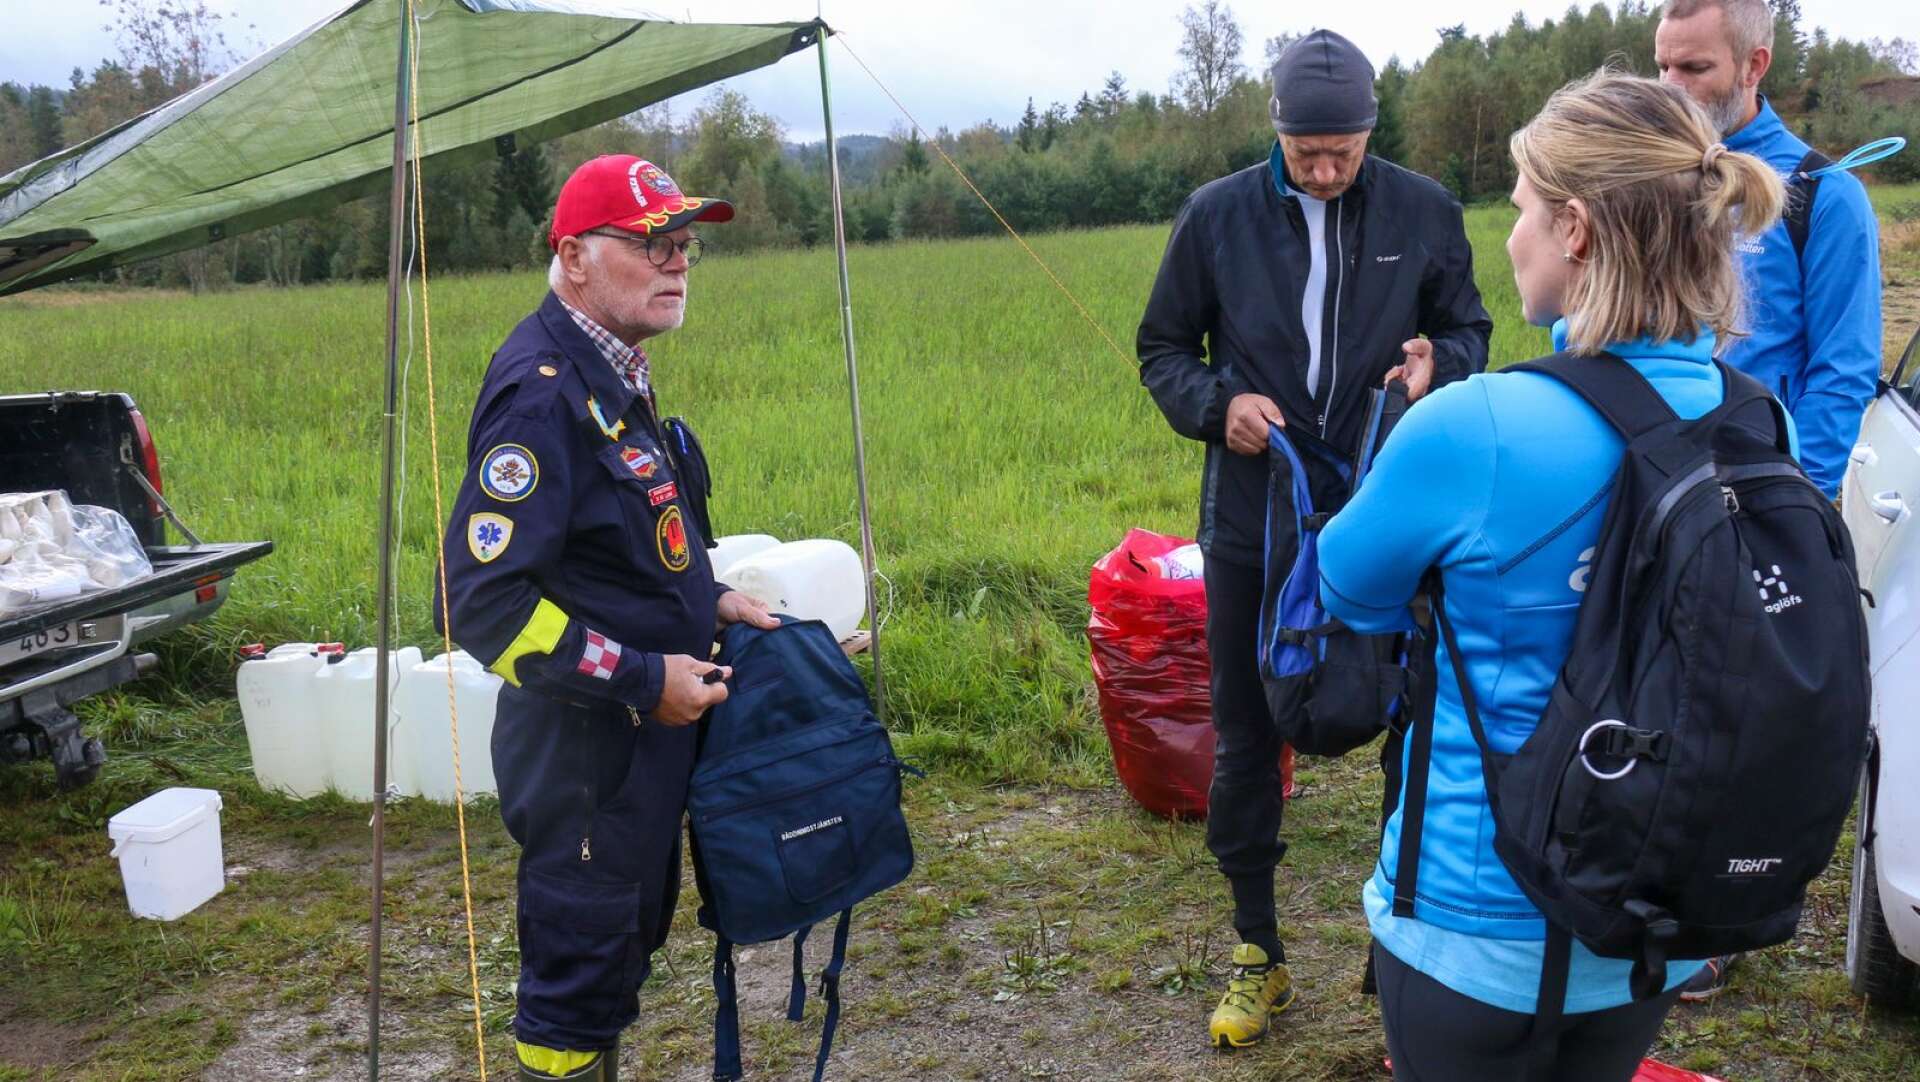 Bosse Ljung i brandmannaklubben instruerar deltagarna innan start.